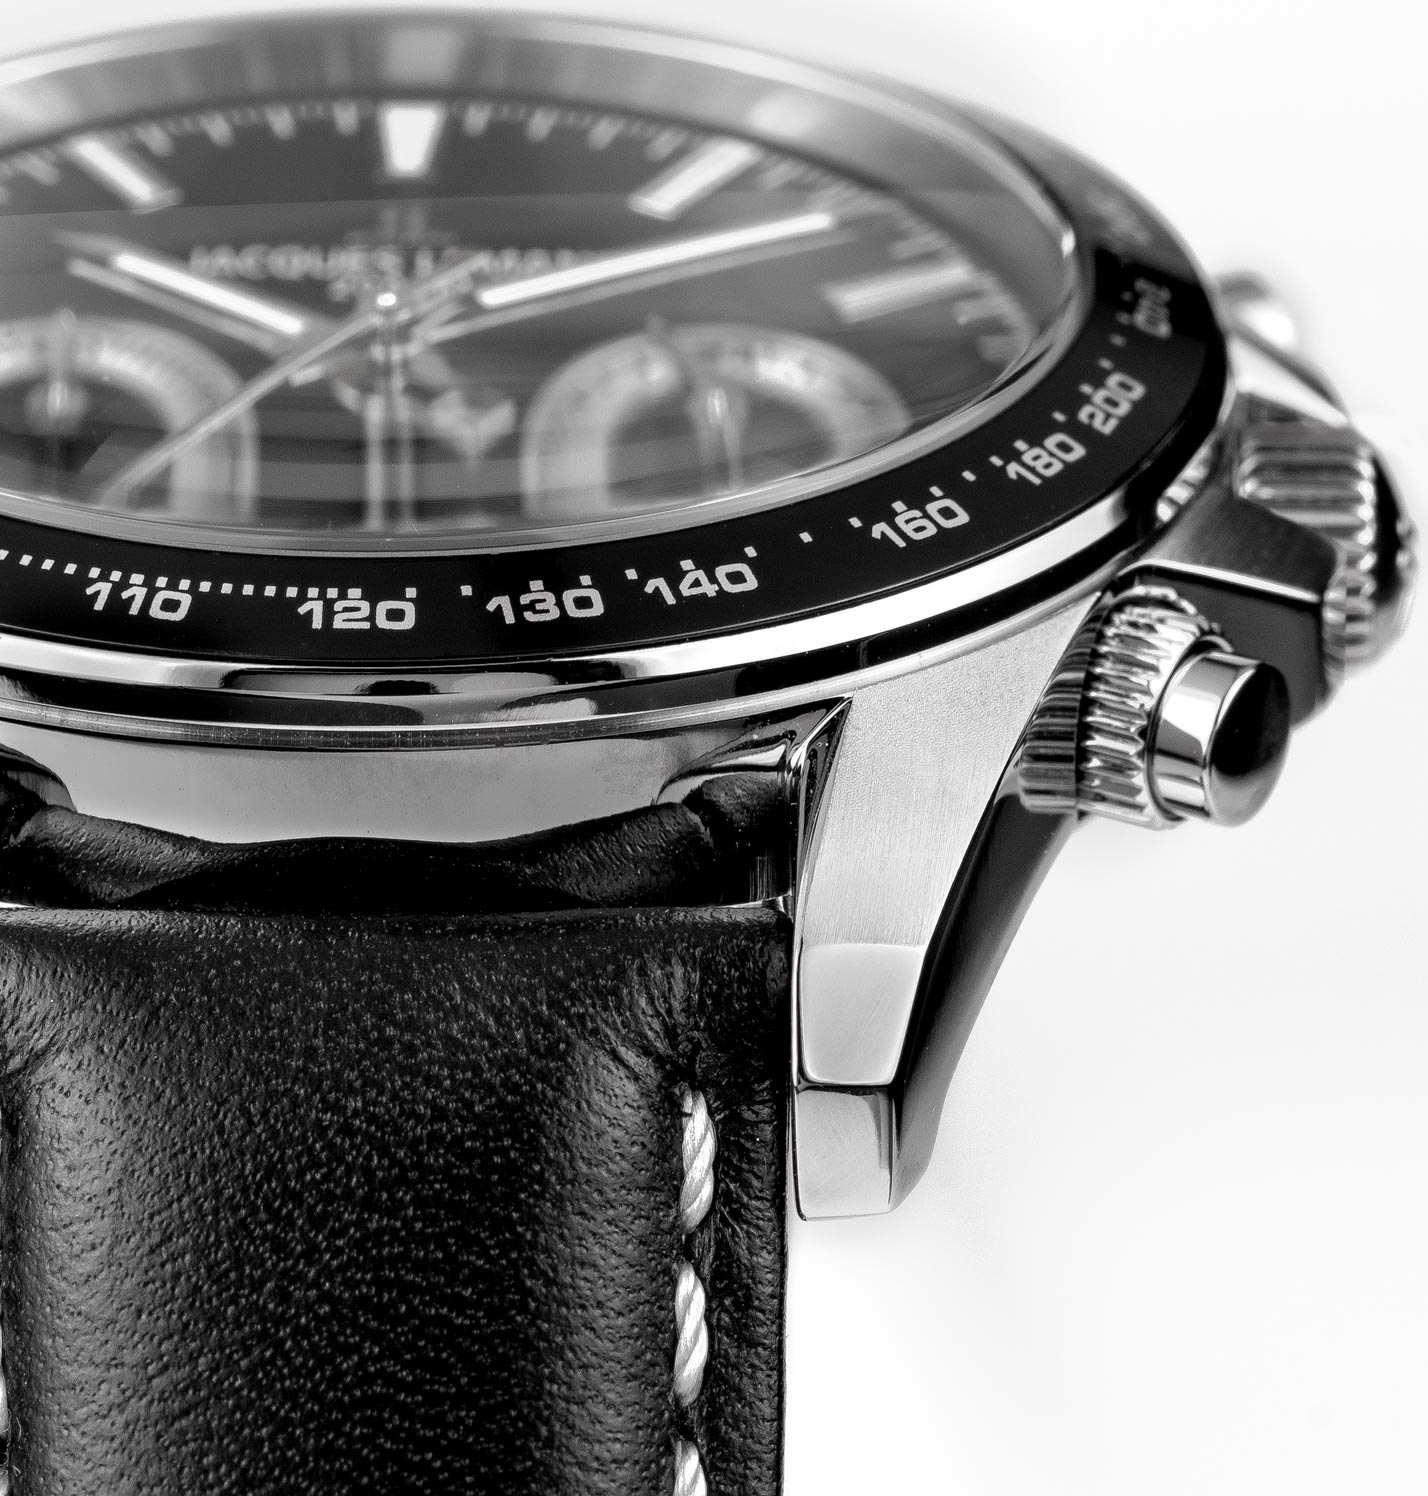 Наручные часы описание по инструкция, — в 1-1877A лучшей характеристики, фото, купить цене, AllTime.ru Jacques Lemans интернет-магазине